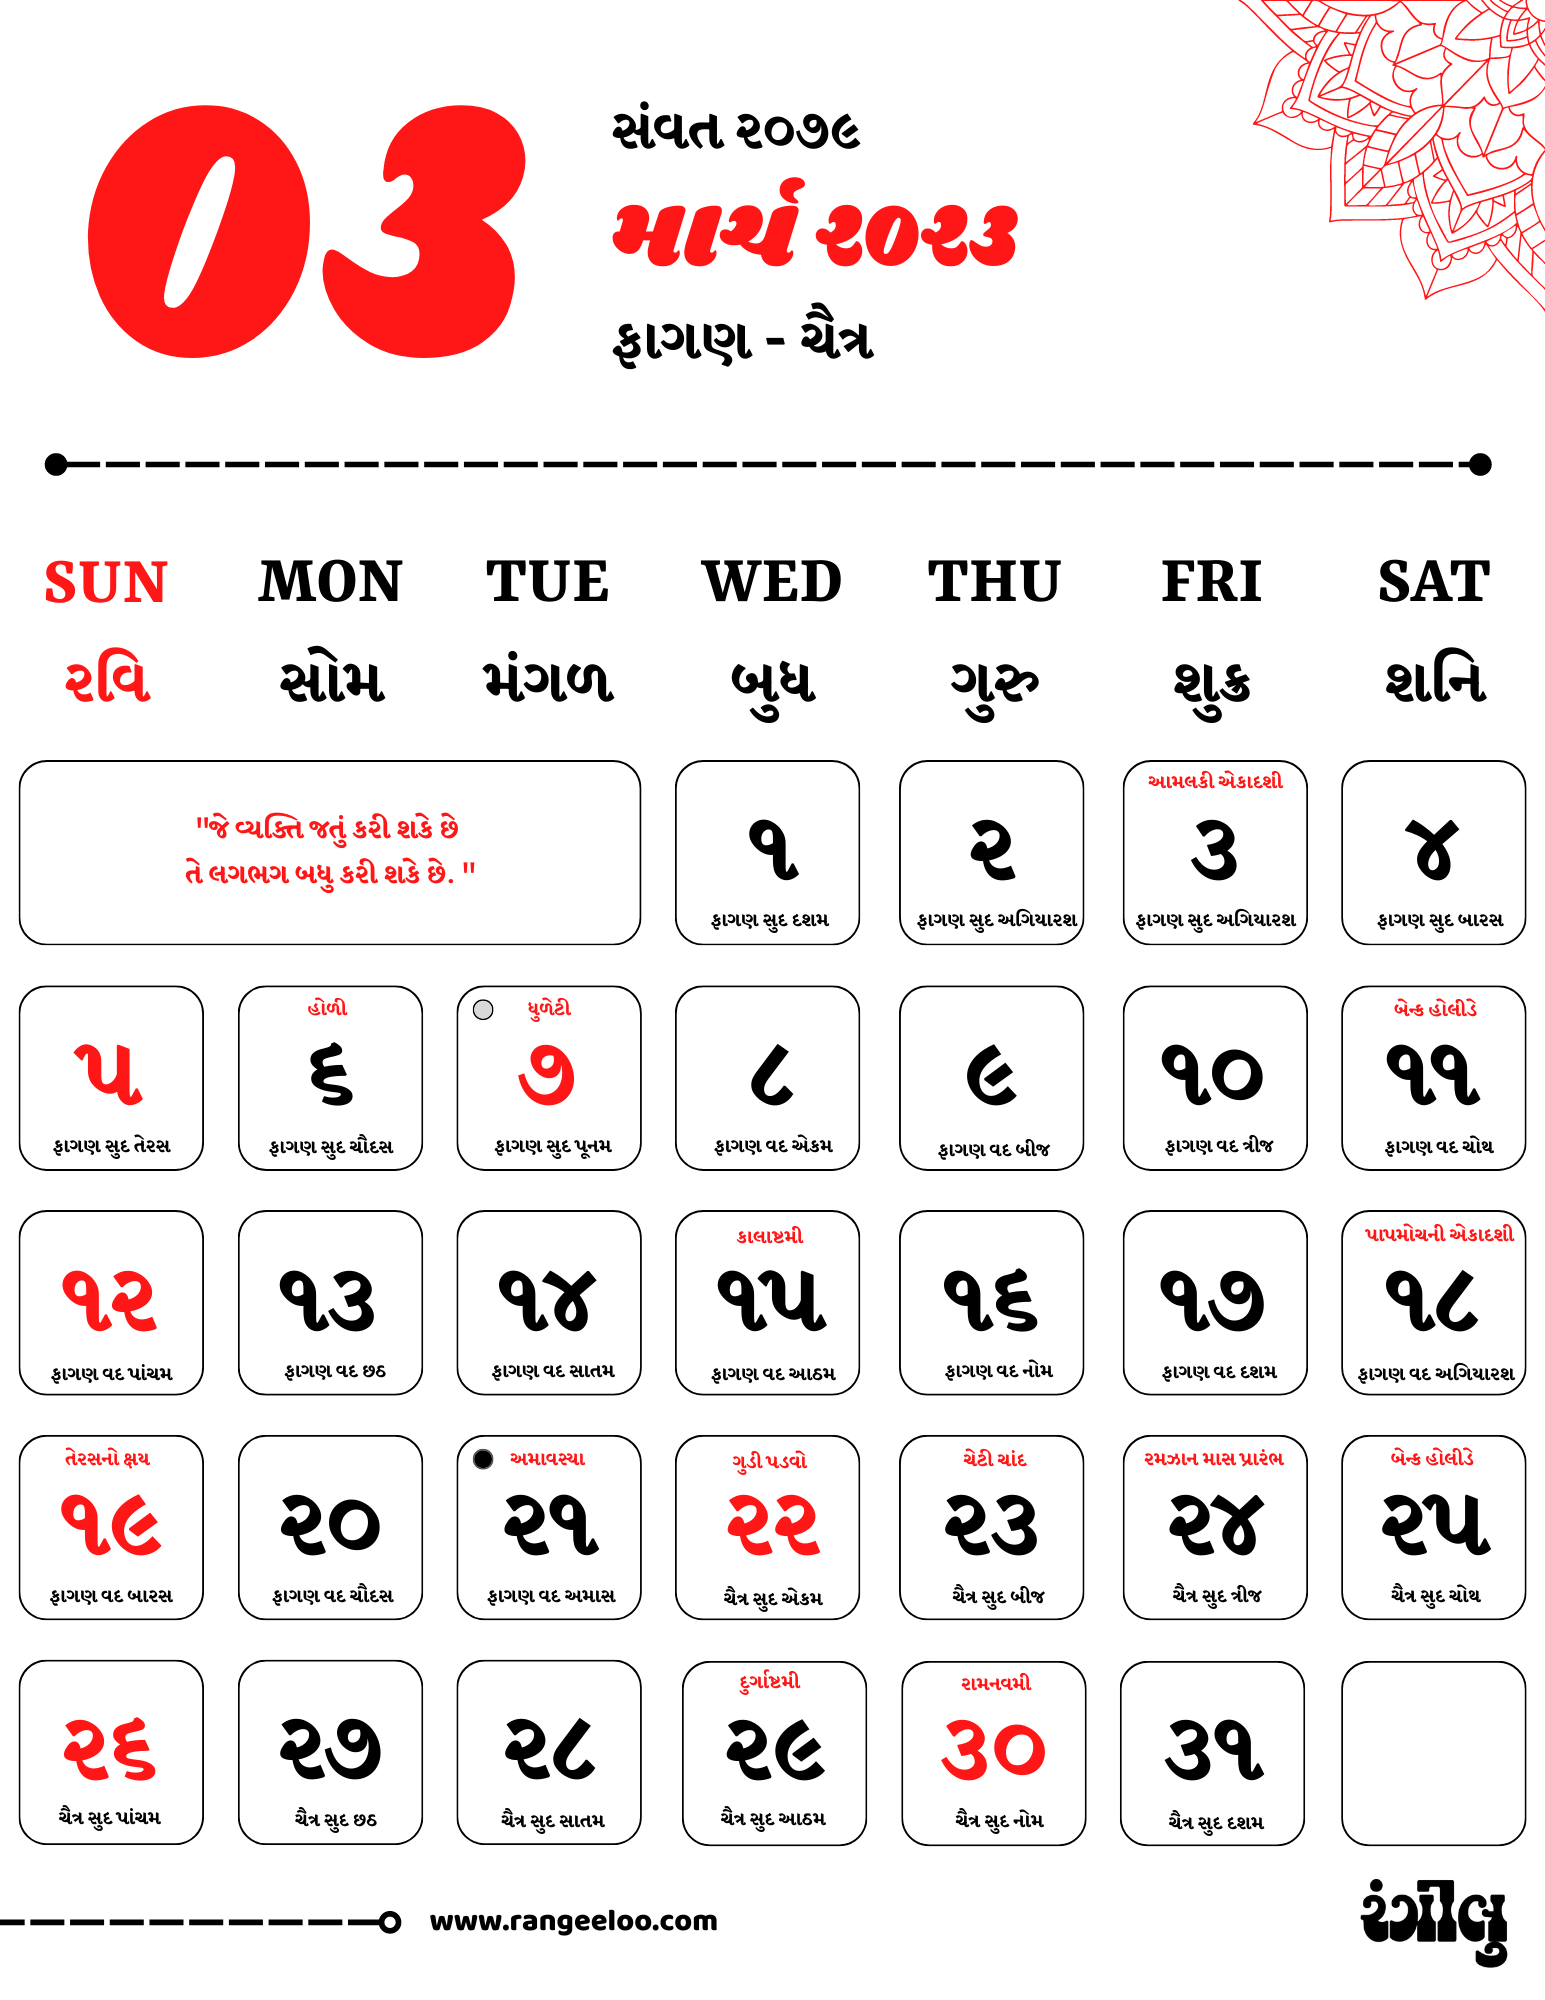 ગુજરાતી કેલેન્ડર, કેલેન્ડર, ગુજરાતી કેલેન્ડર 2023, માર્ચ 2023, ફાગણ-ચૈત્ર 2023, માર્ચ 2023 ના તહેવાર, માર્ચ 2023 ના બેન્ક હોલીડે, તારીખિયું, Gujarati Calendar, Gujarati Calendar 2023, Calendar, Calendar 2023 Gujarati, March 2023, March 2023 Bank Holidays, March 2023 Festivals